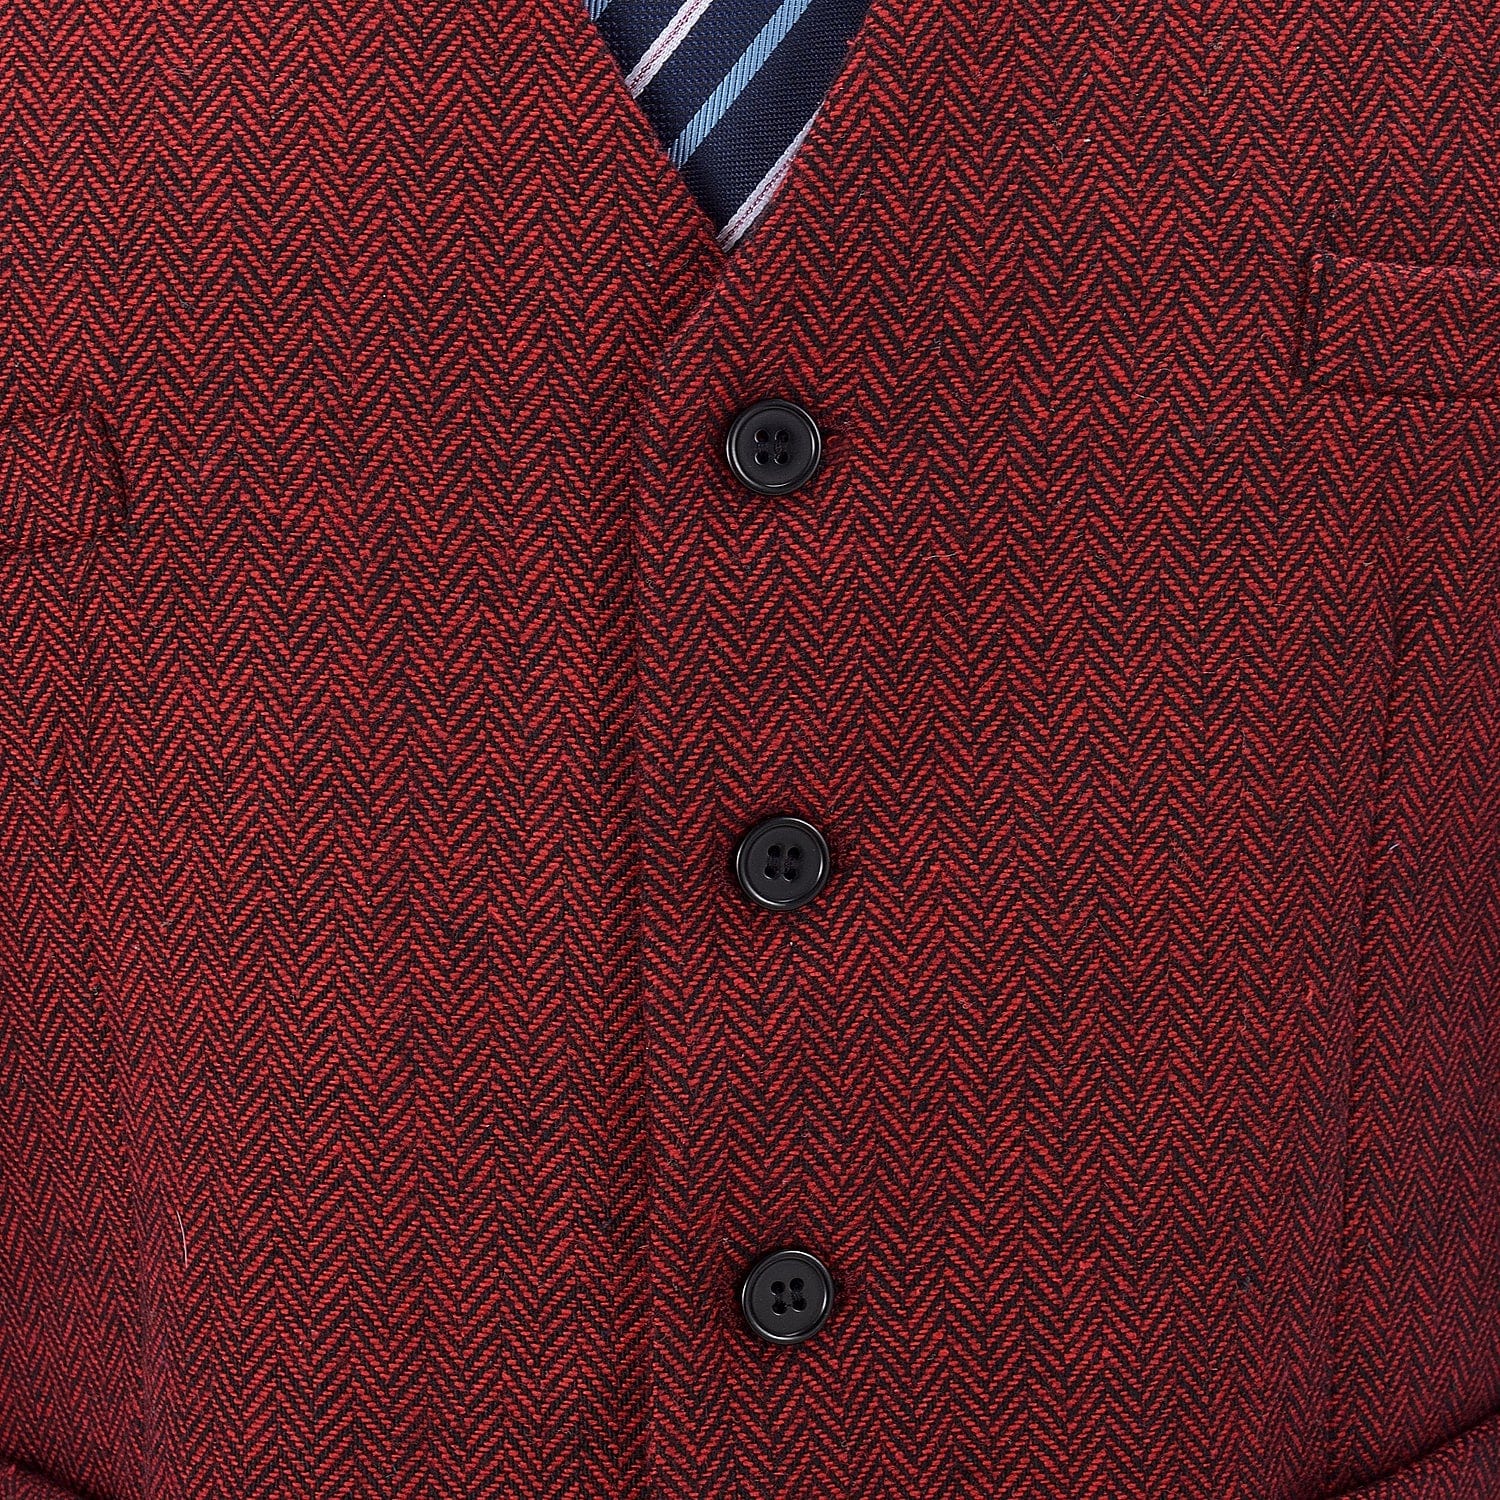 ceehuteey Men's Tweed Herringbone Paneled Satin Vest Slim Fit Waistcoat